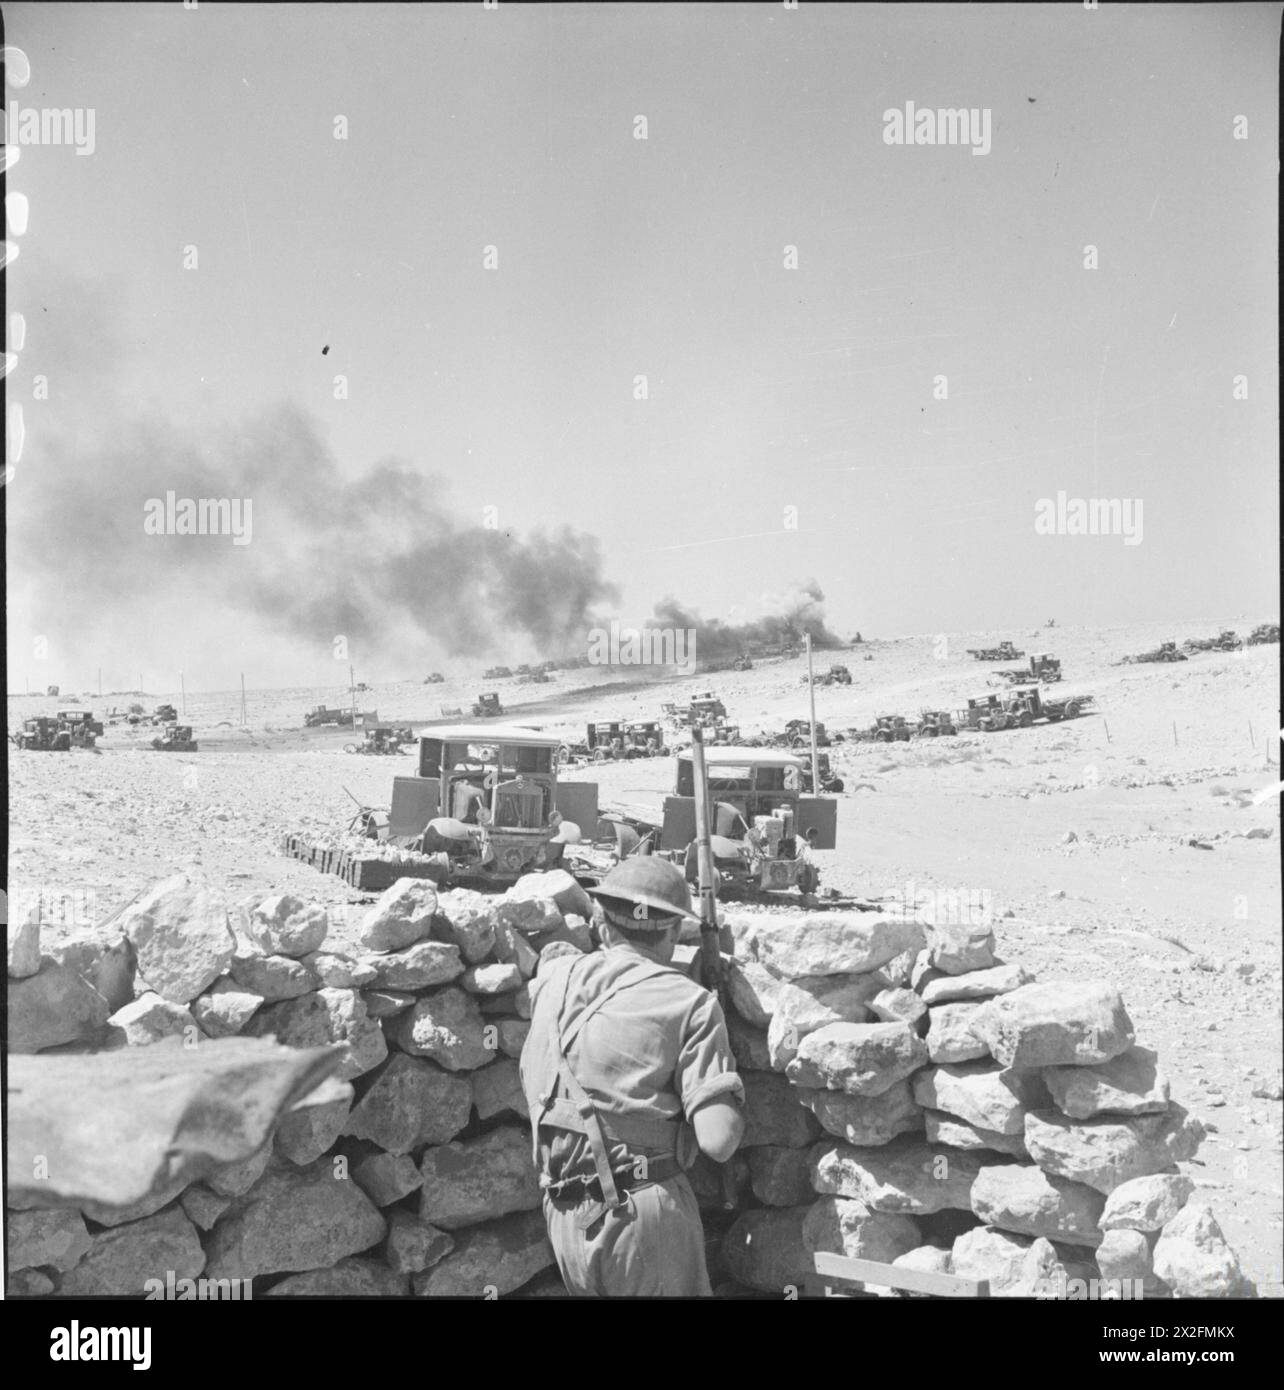 L'ESERCITO BRITANNICO IN NORD AFRICA 1941 - Un mitragliere Bren in azione contro i bombardieri nemici che attaccano Tobruk. In lontananza è stato colpito un camion italiano abbandonato, carico di munizioni, il 12 settembre 1941 Foto Stock